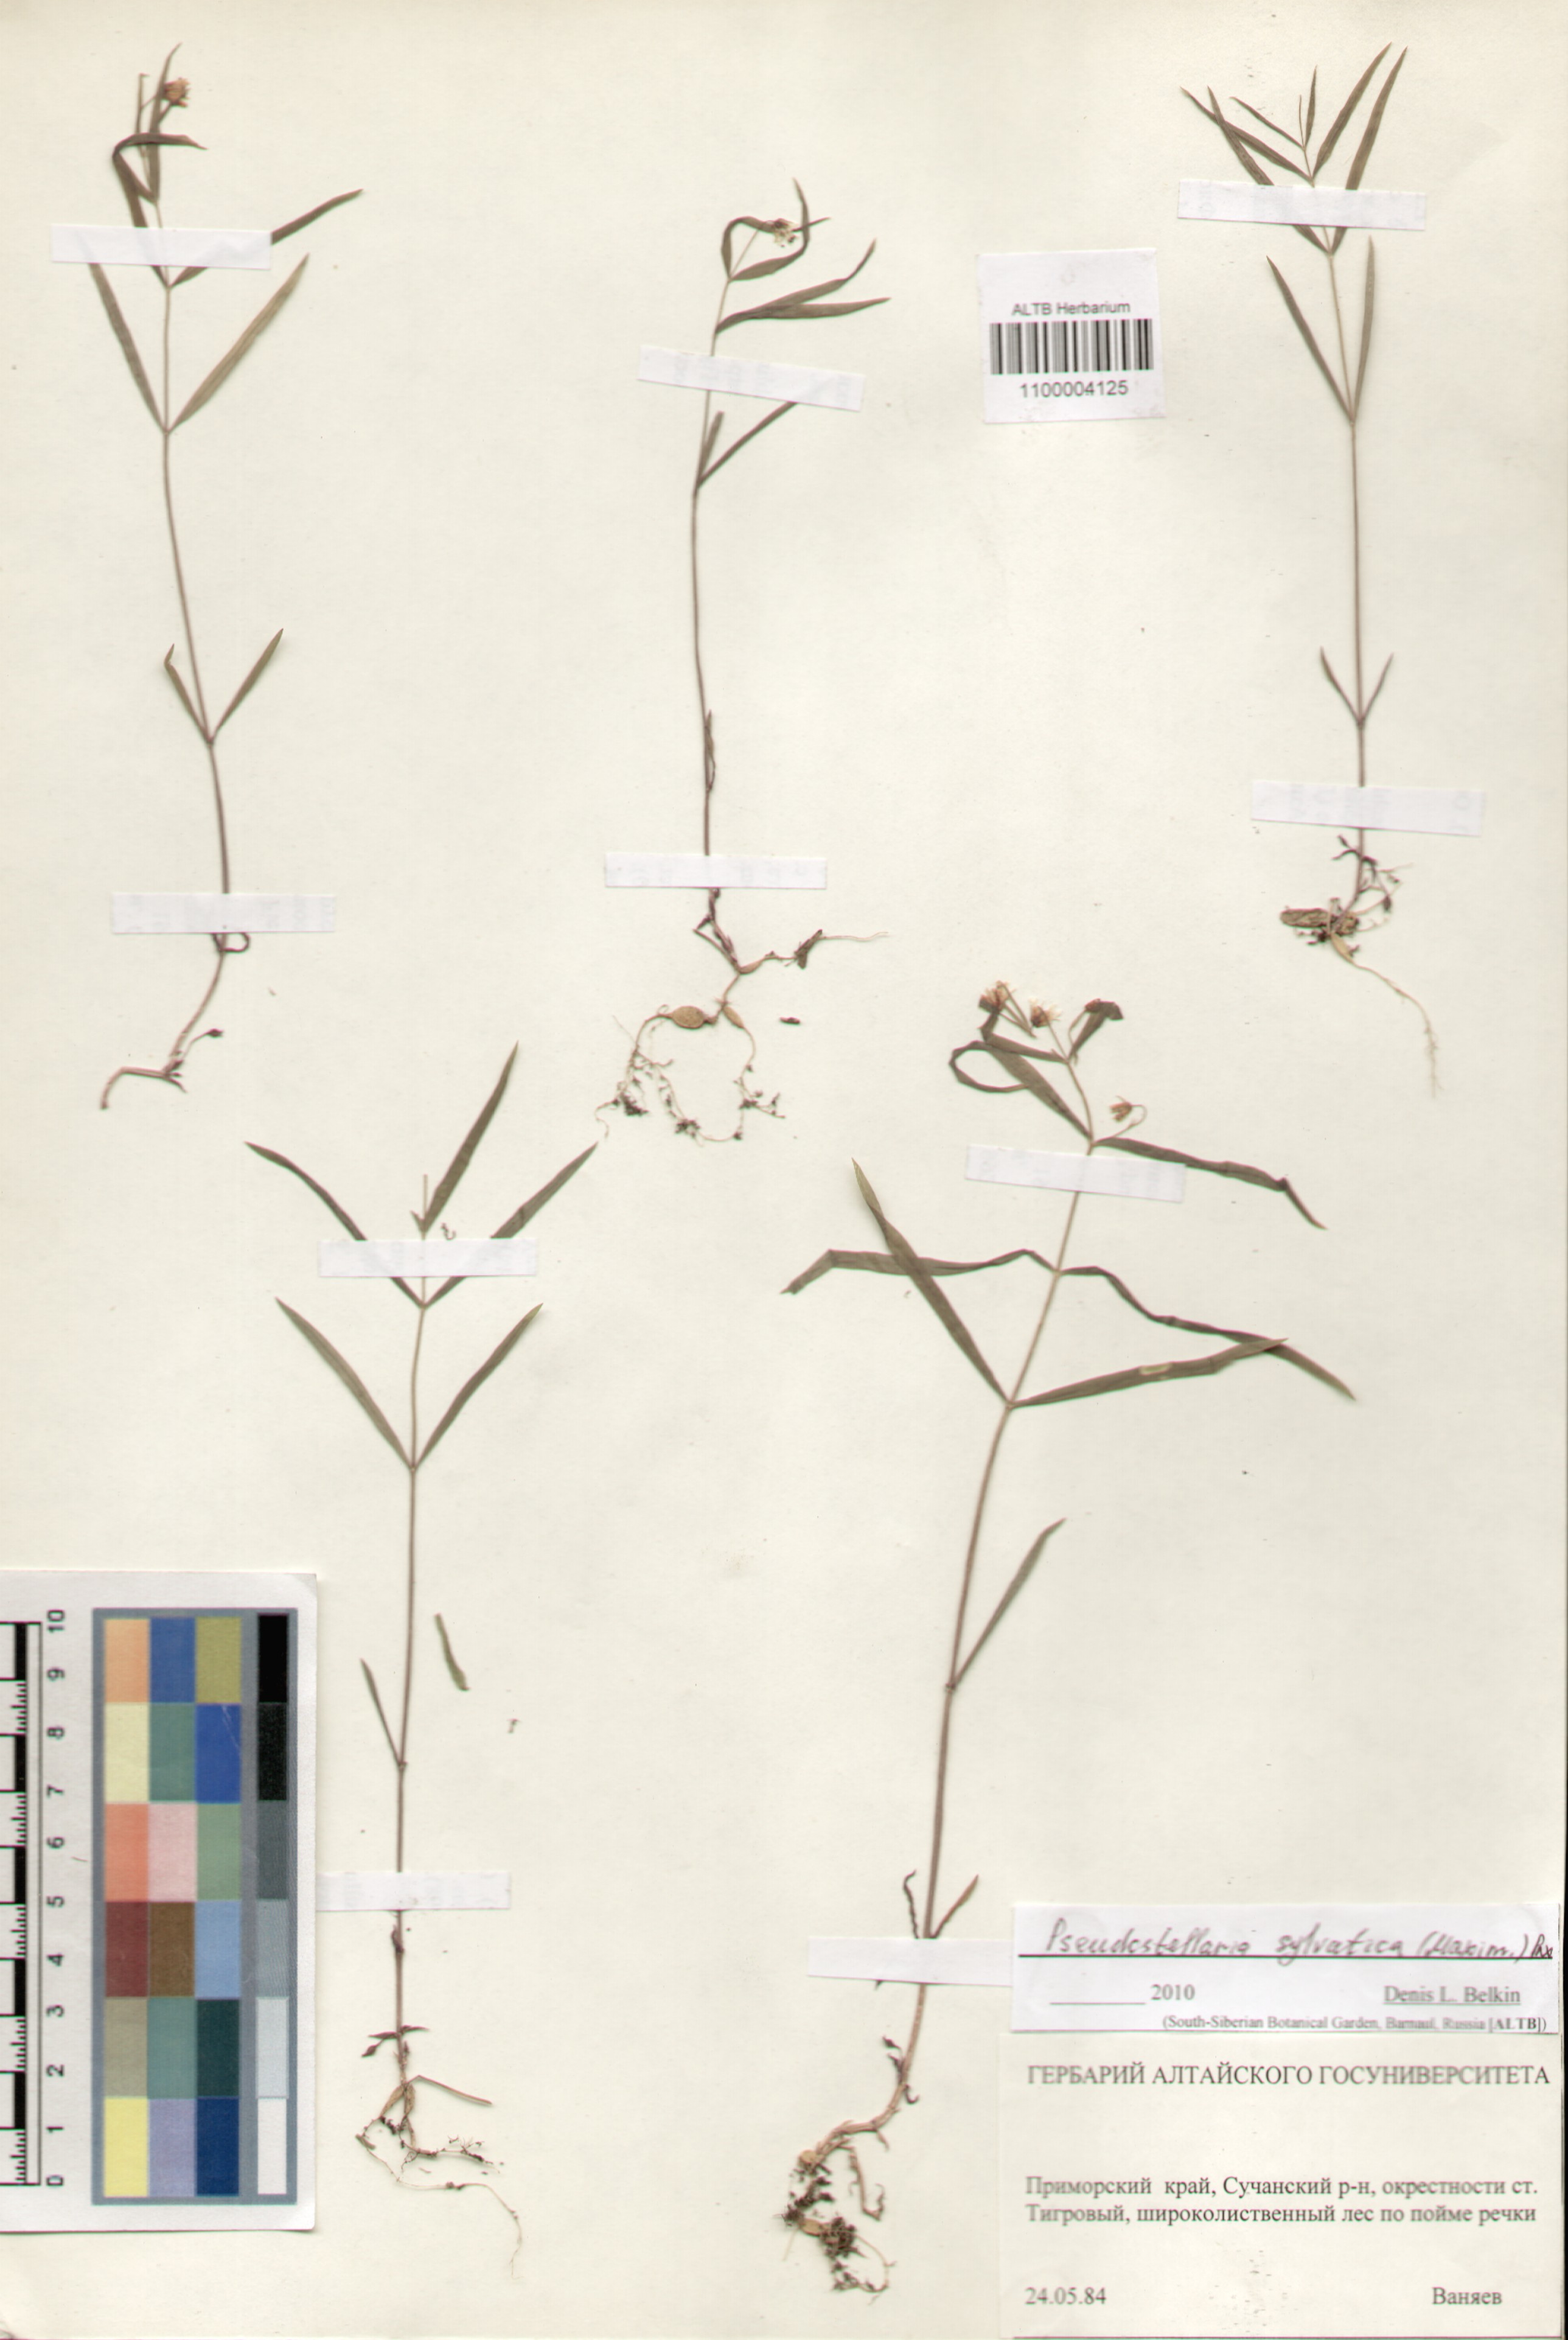 Caryophyllaceae,Pseudostellaria sylvatica (Maxim.) Pax.